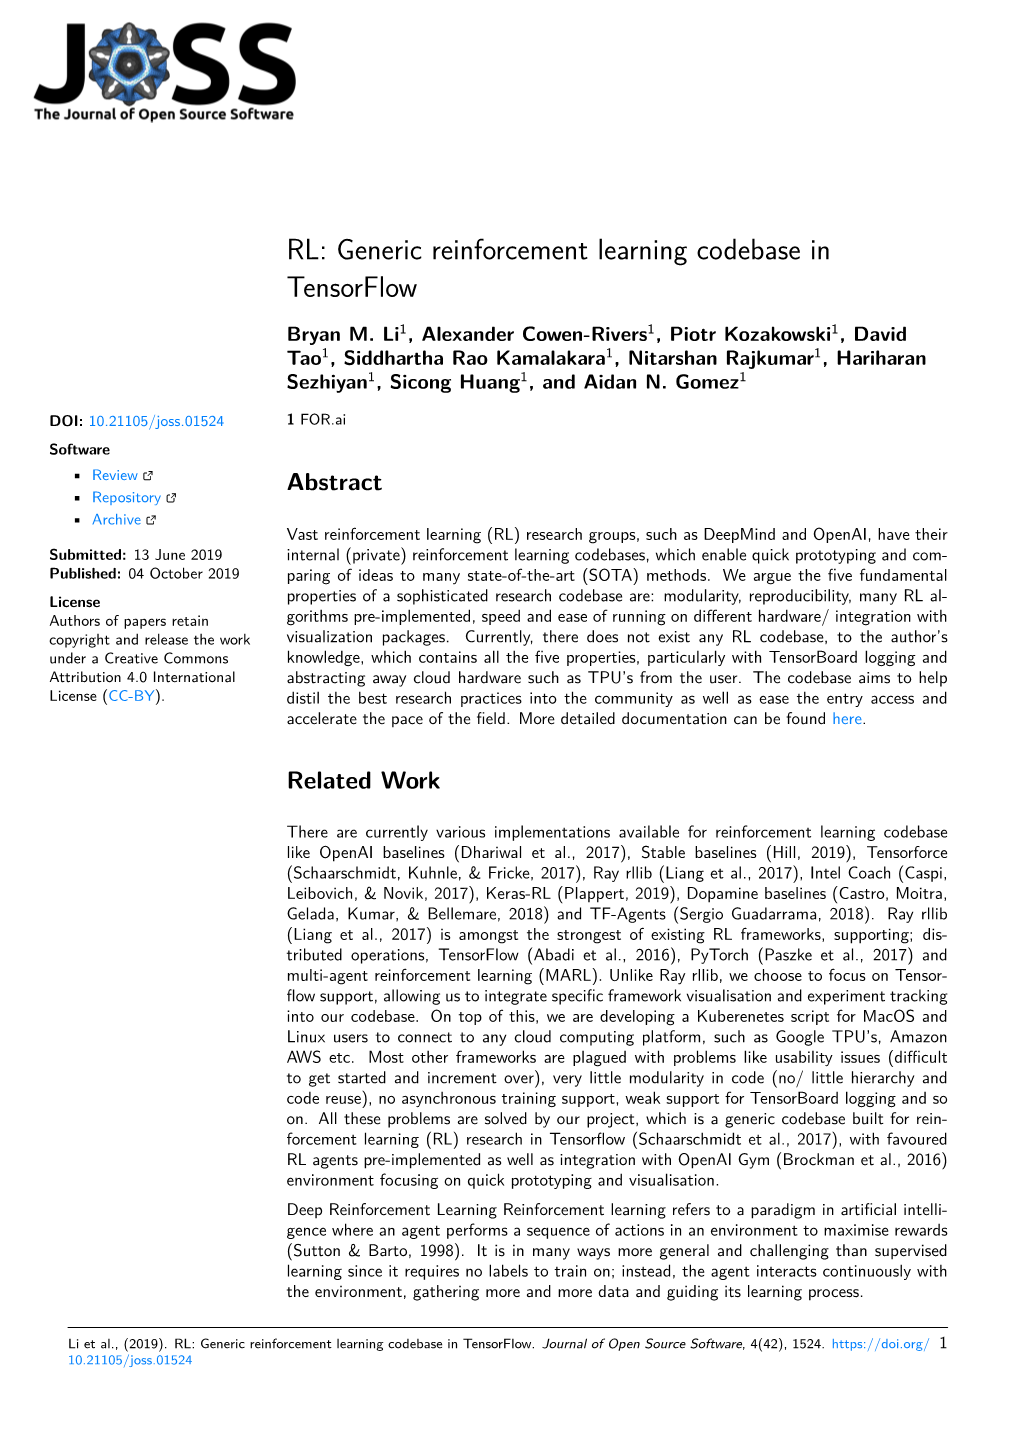 RL: Generic Reinforcement Learning Codebase in Tensorflow